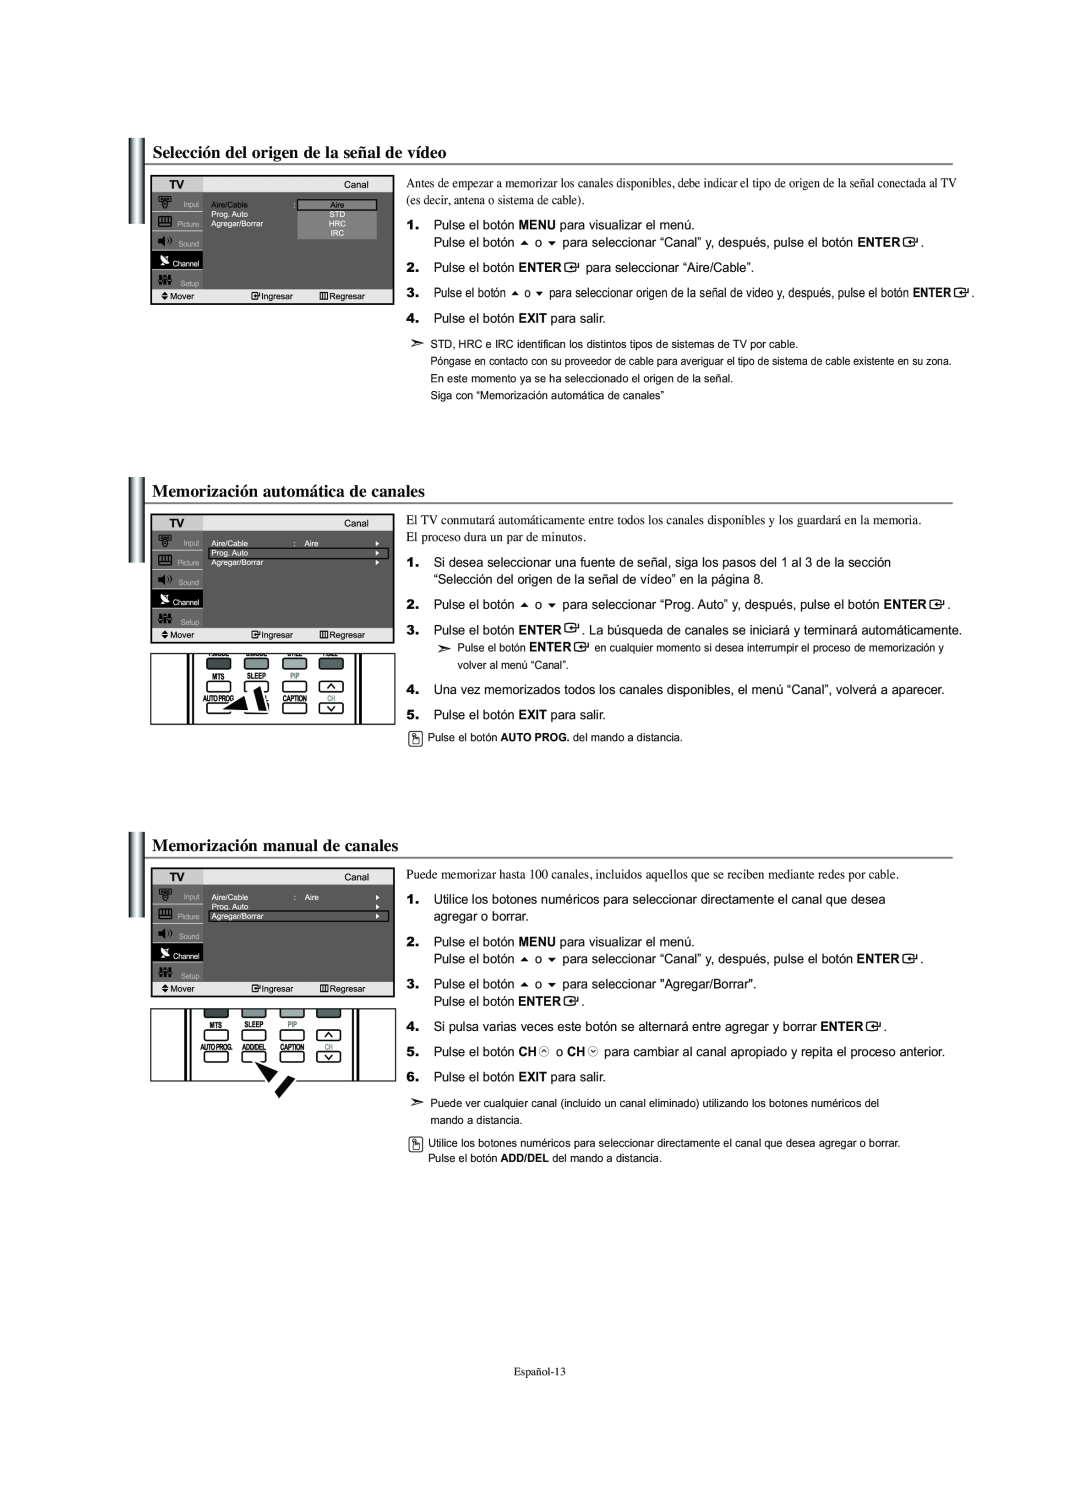 Samsung LN-S2341W manual Selección del origen de la señal de vídeo, Memorización automática de canales 